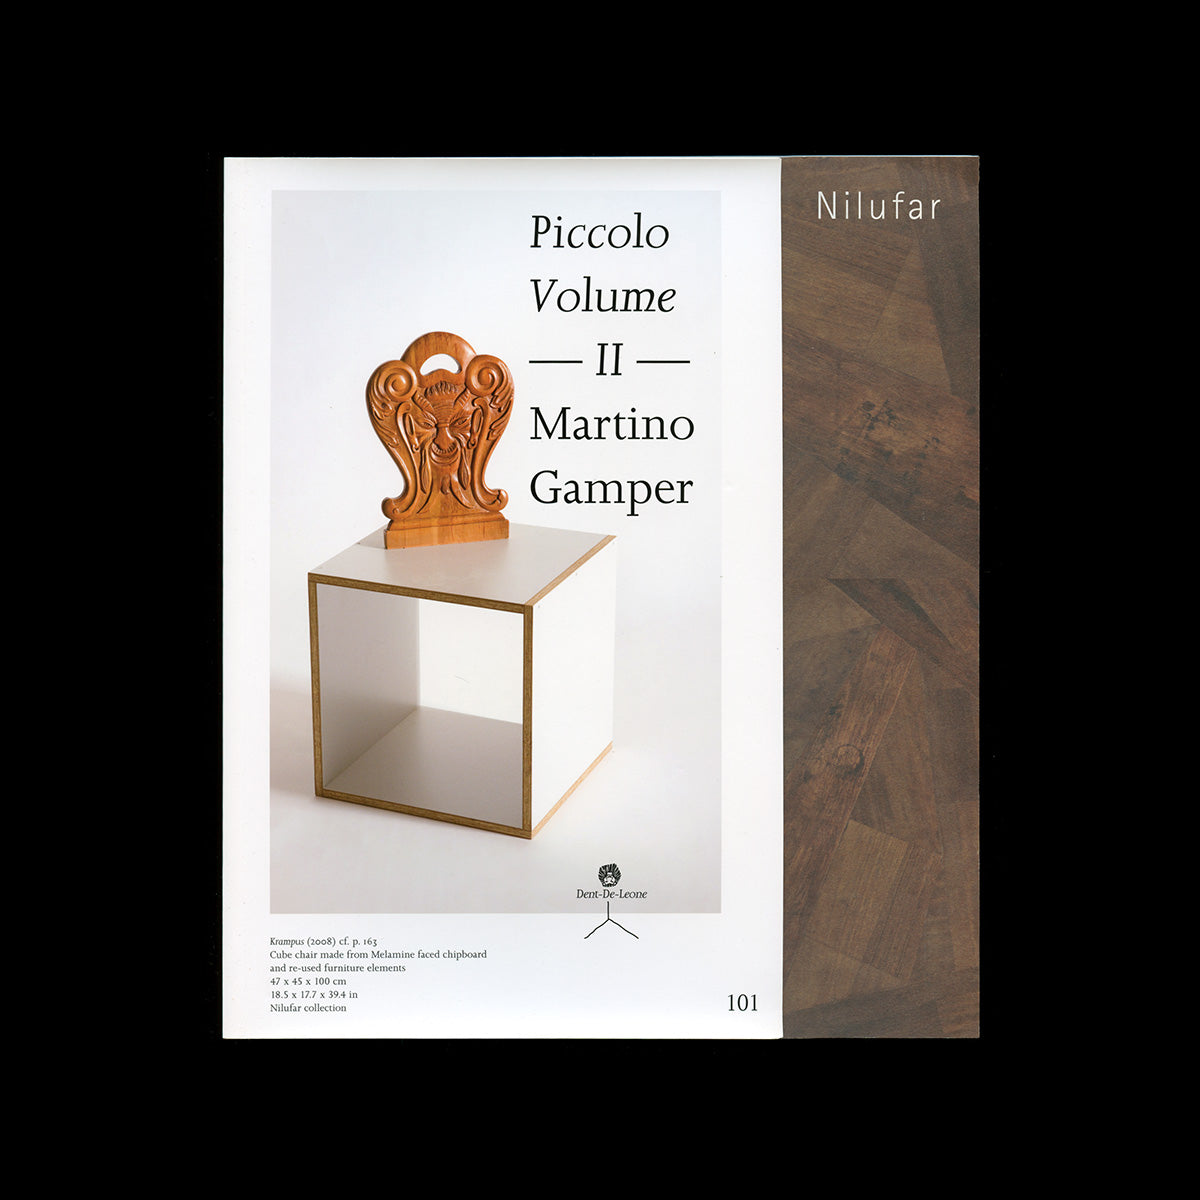 Piccolo Volume II — Martino Gamper